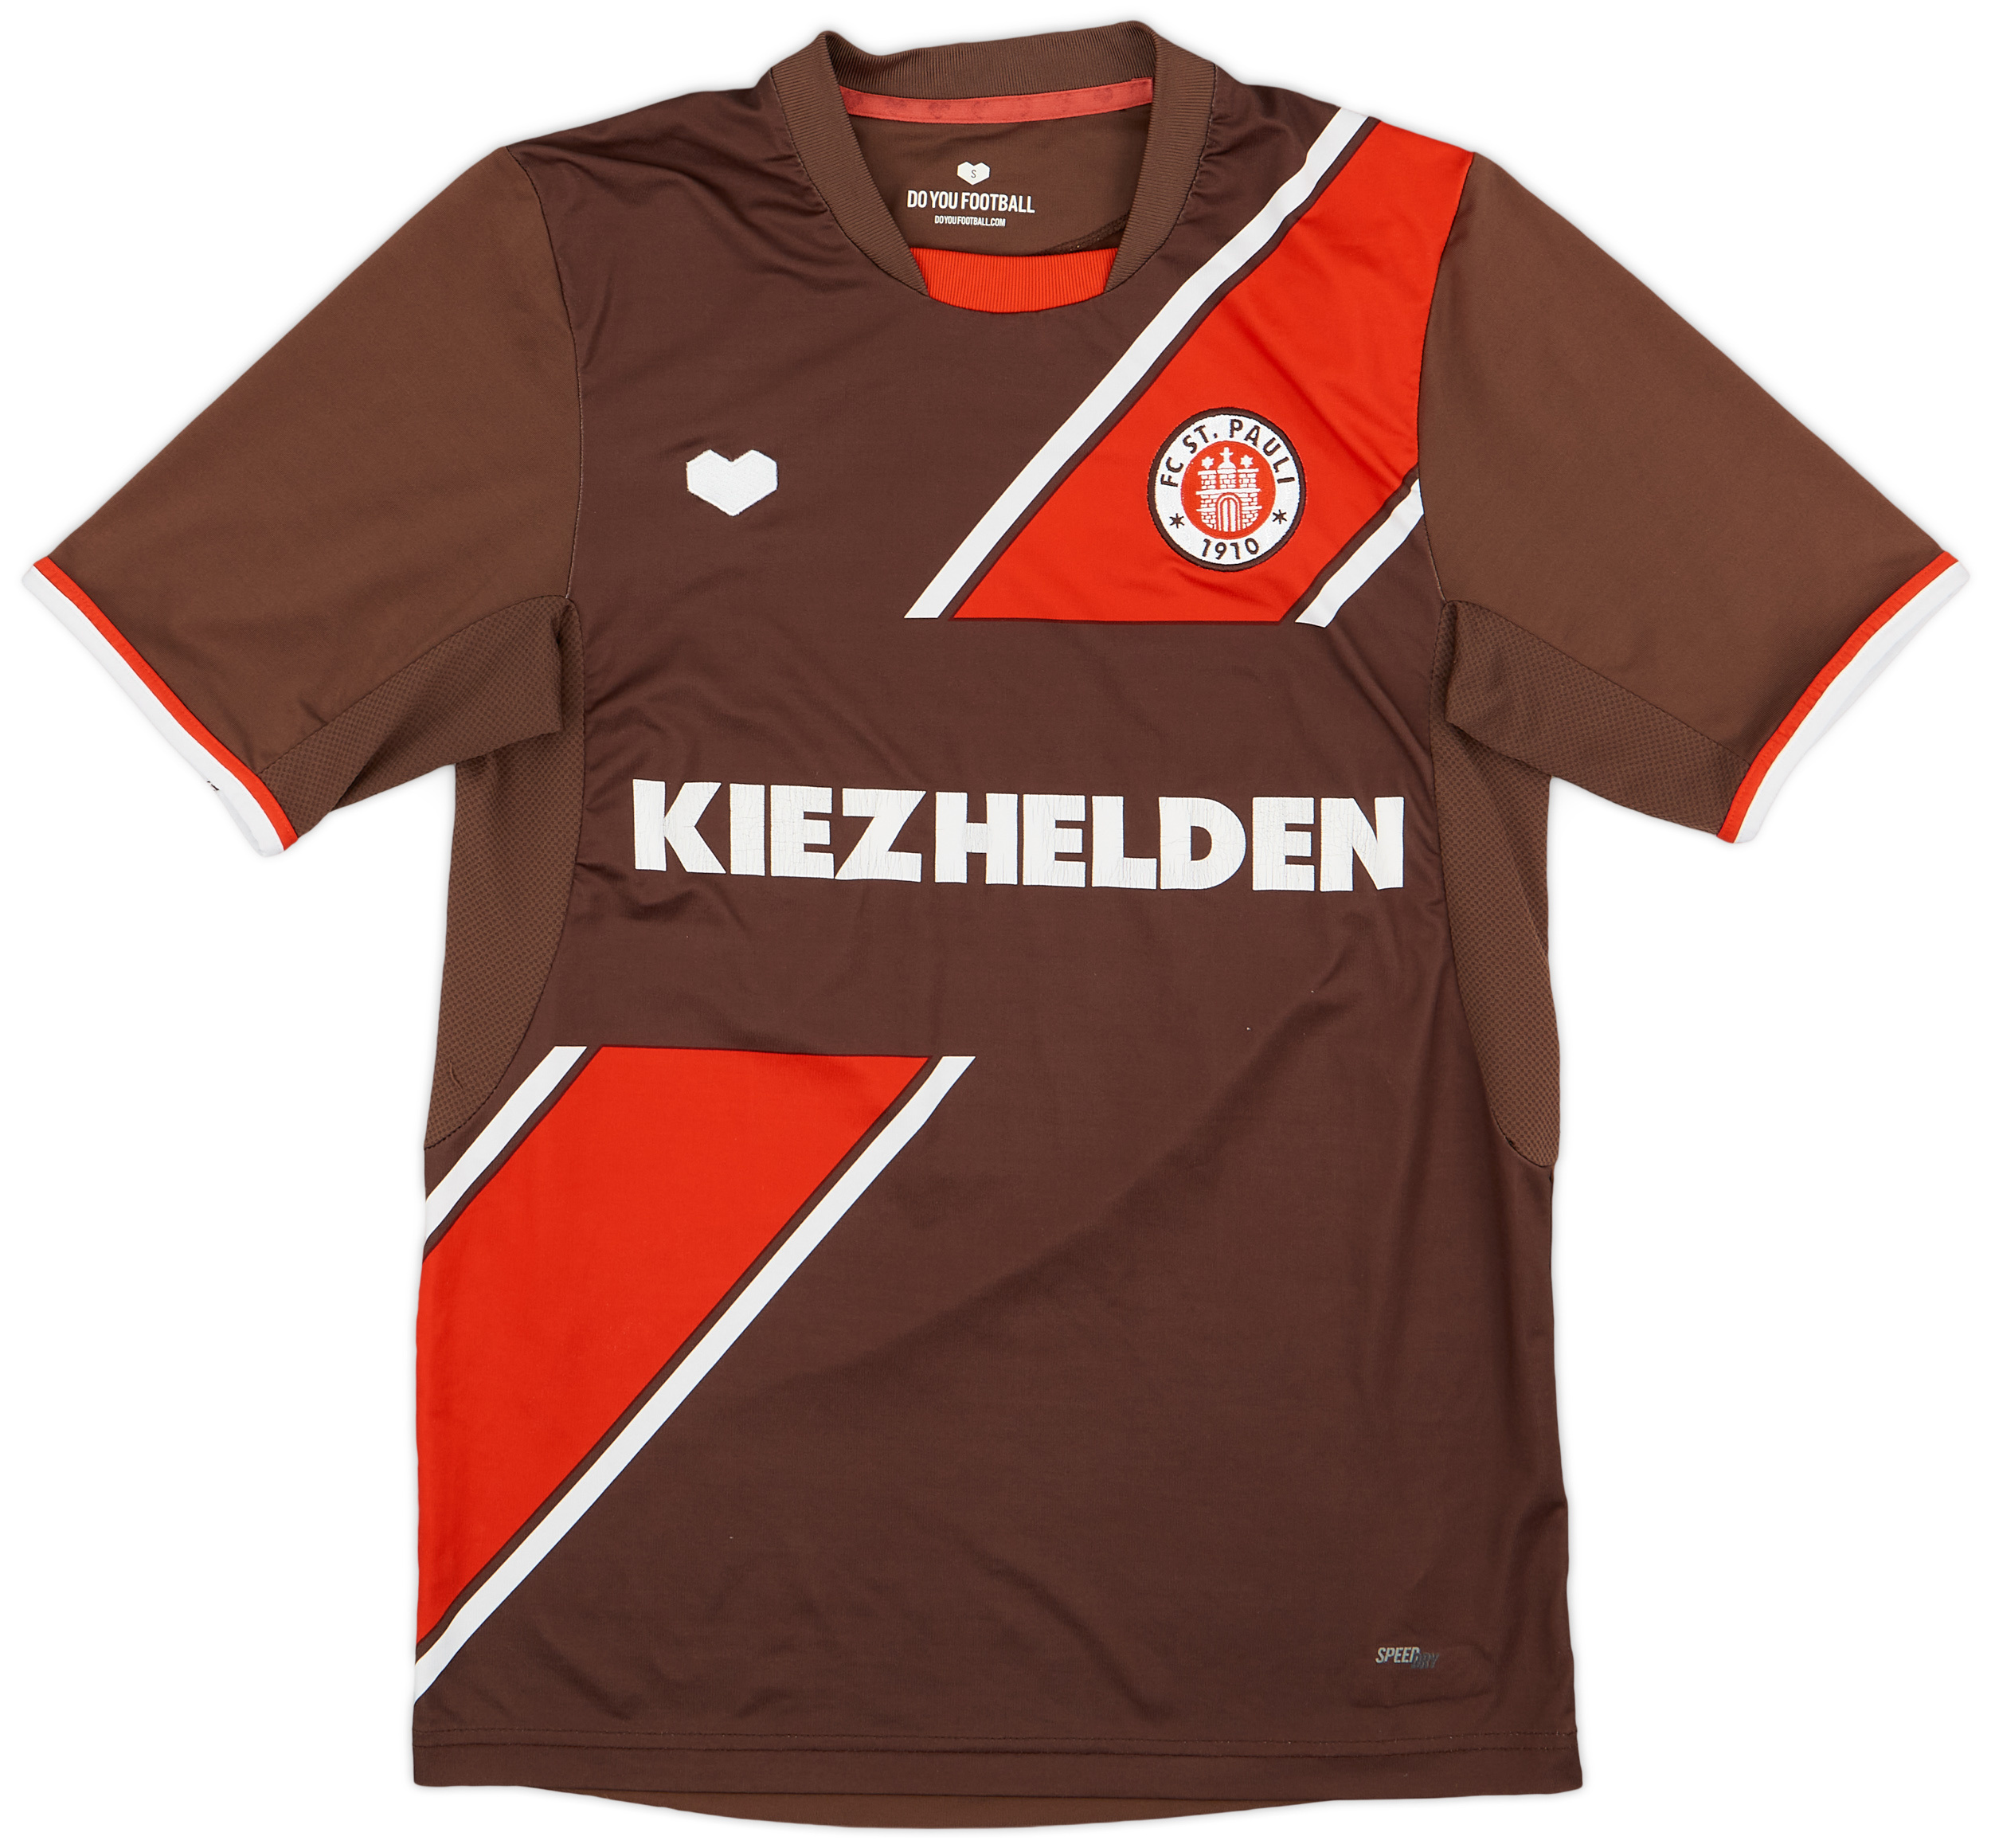 St Pauli  home shirt (Original)